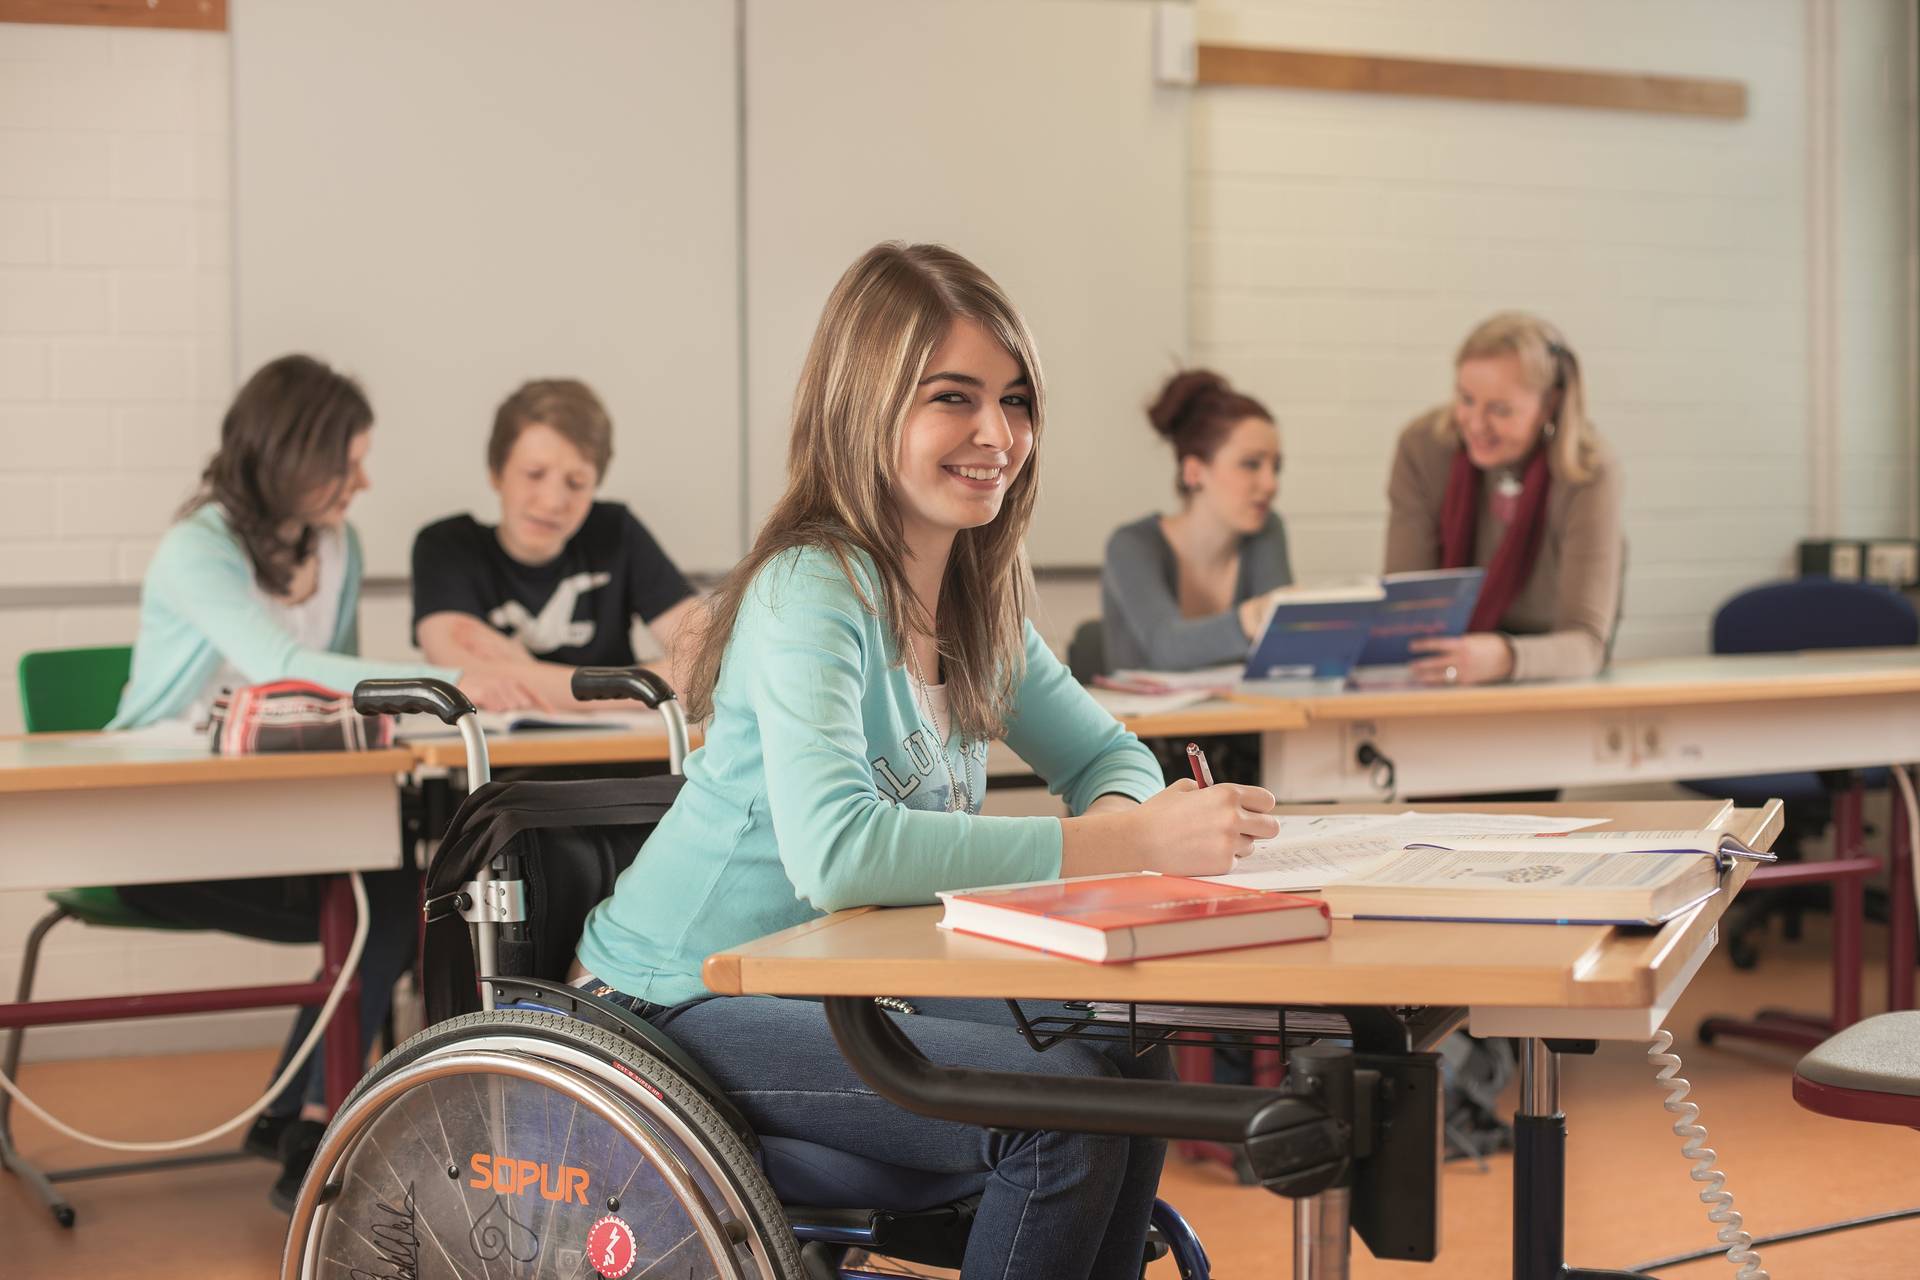 Schülerin im Rollstuhl lächelt während des Unterrichtsgeschehens in die Kamera.